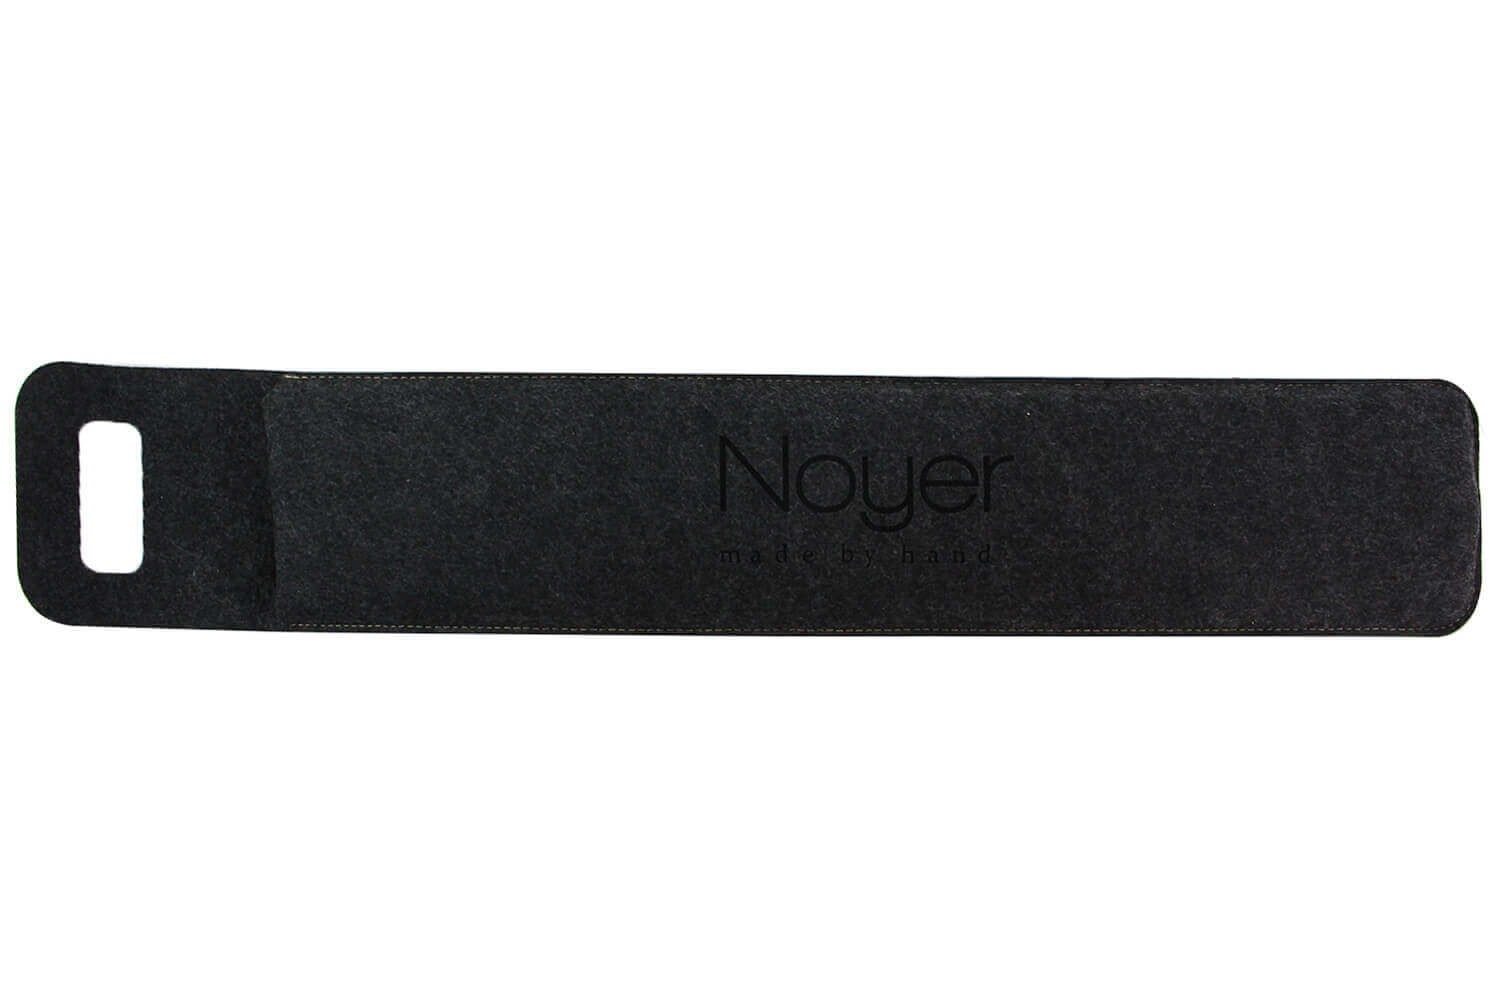 Neon Living Aimant couteau 59cm - Noyer